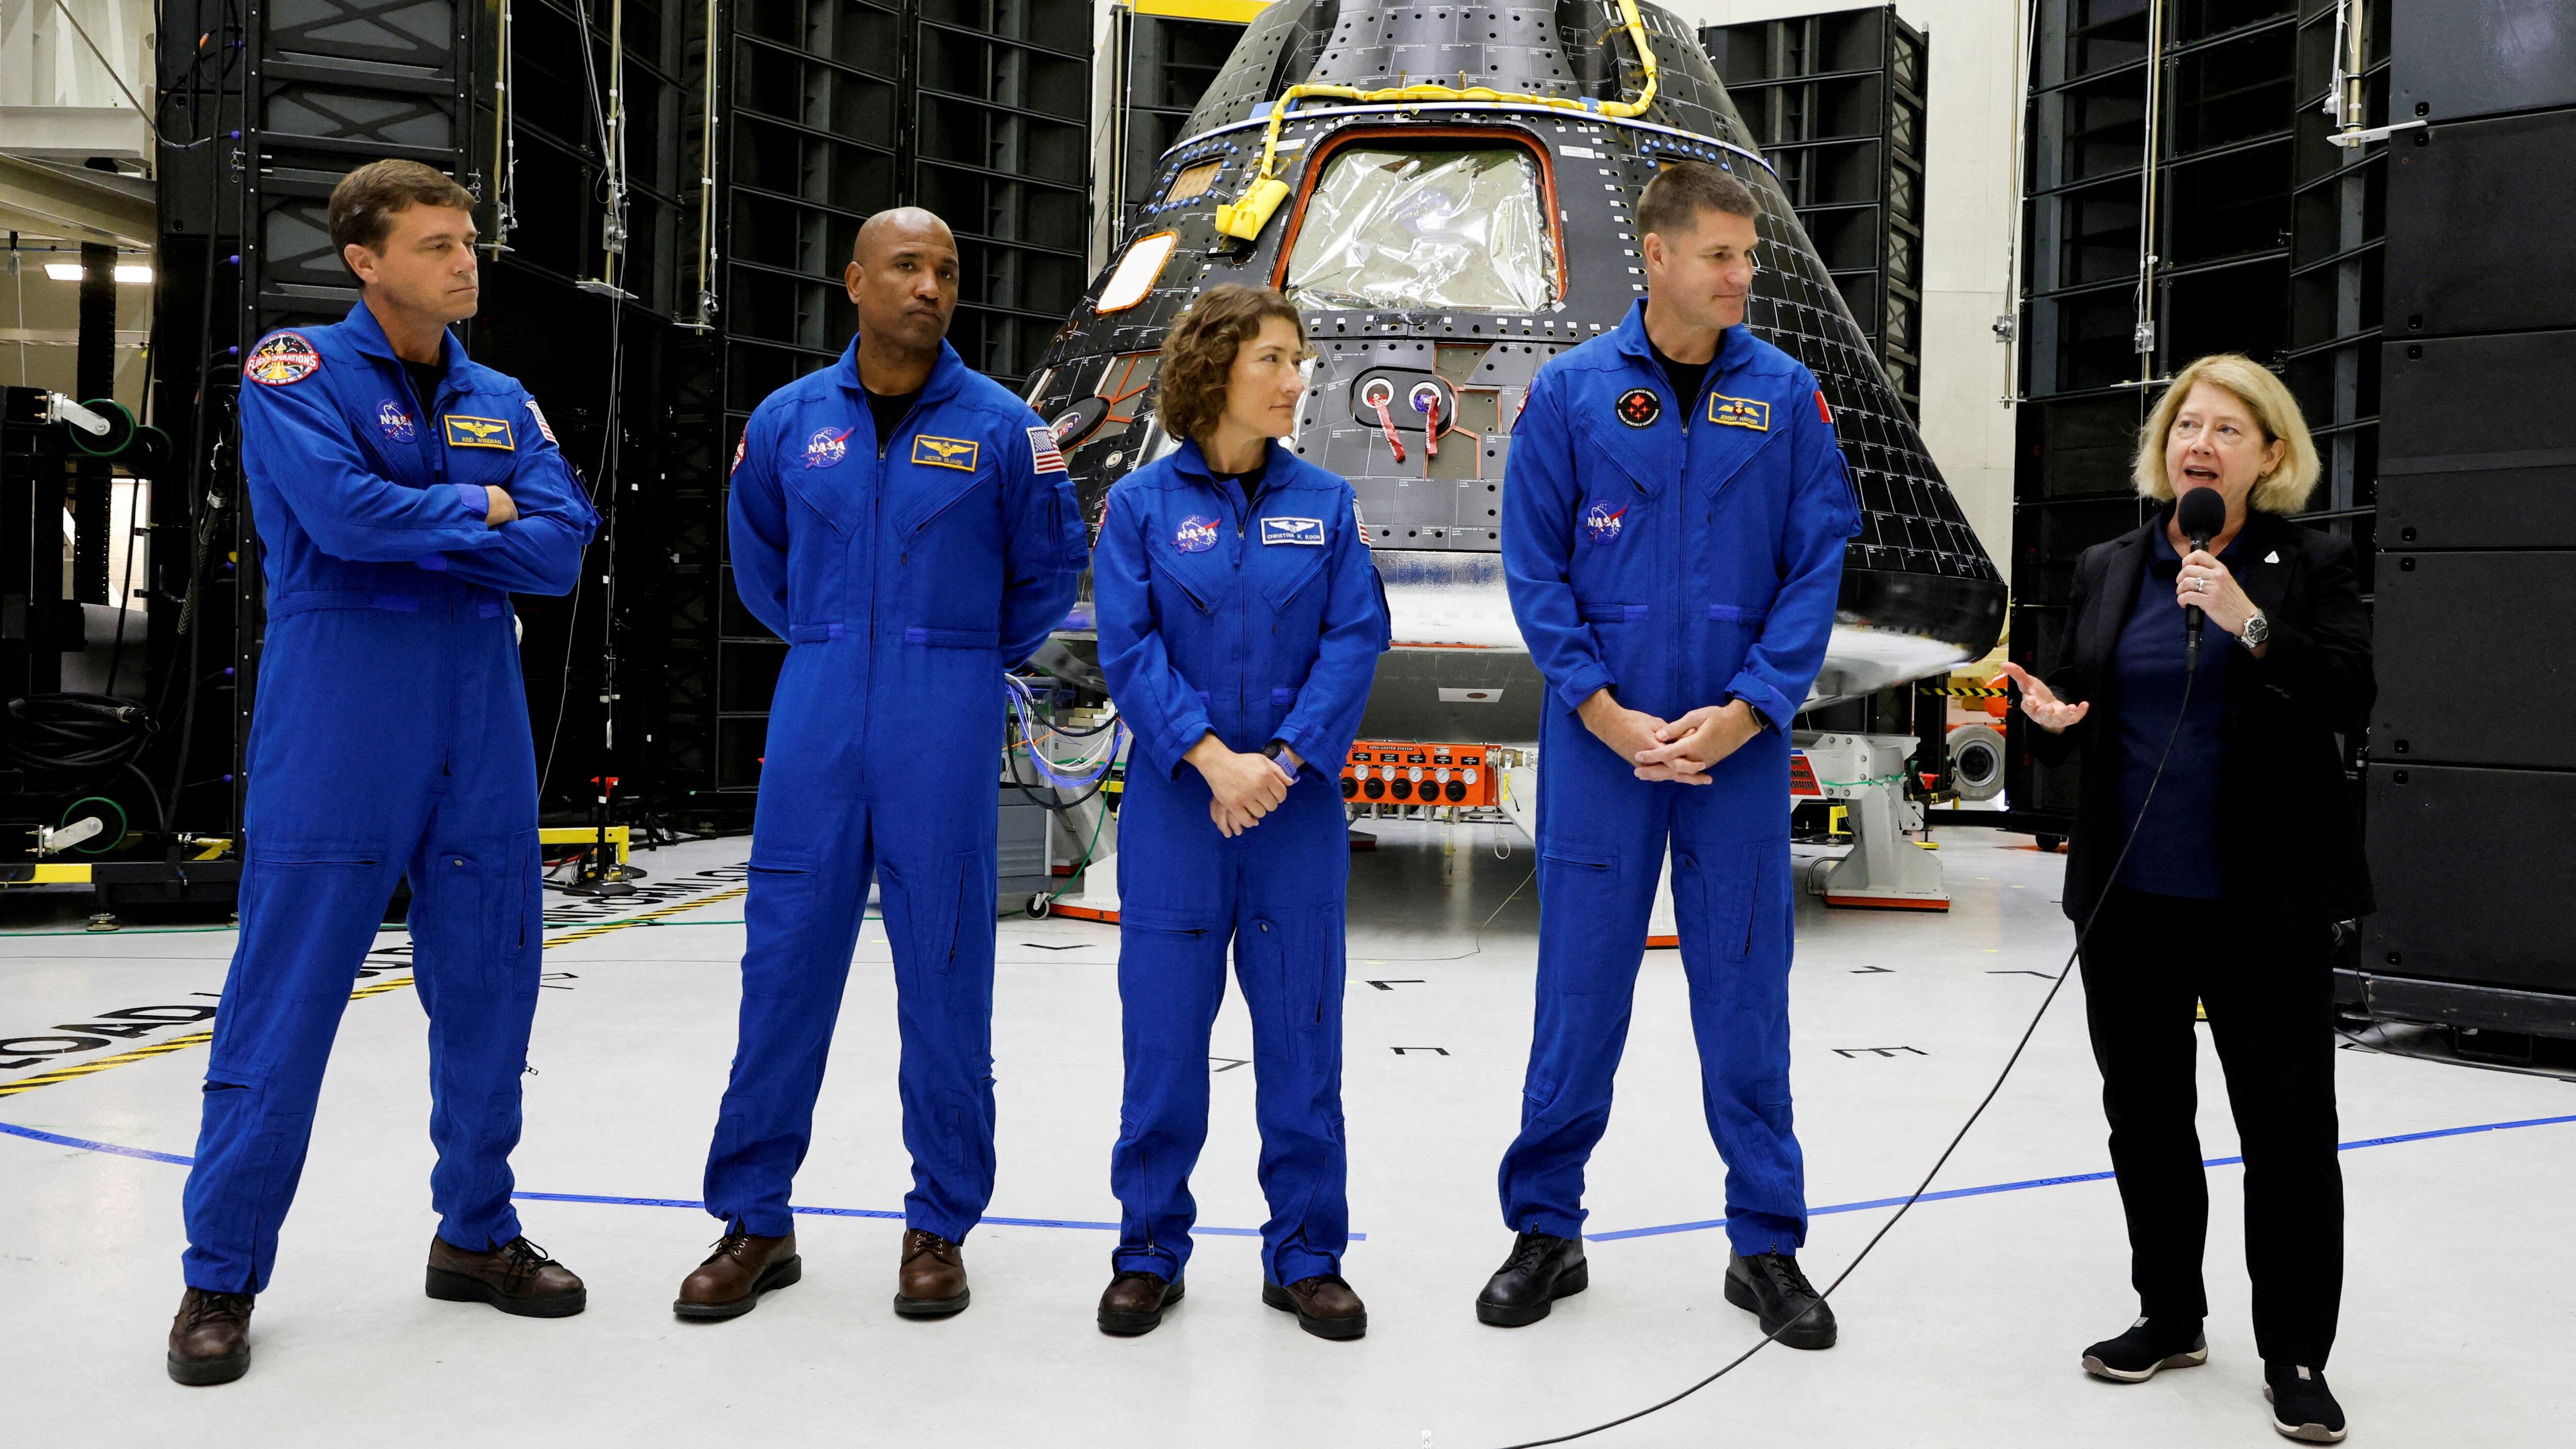 Los astronautas de la misión Artemis II Reid Wiseman (comandante), Victor Glover (piloto), y los especialistas de misión Christina Hammock Koch y Jeremy Hansen.